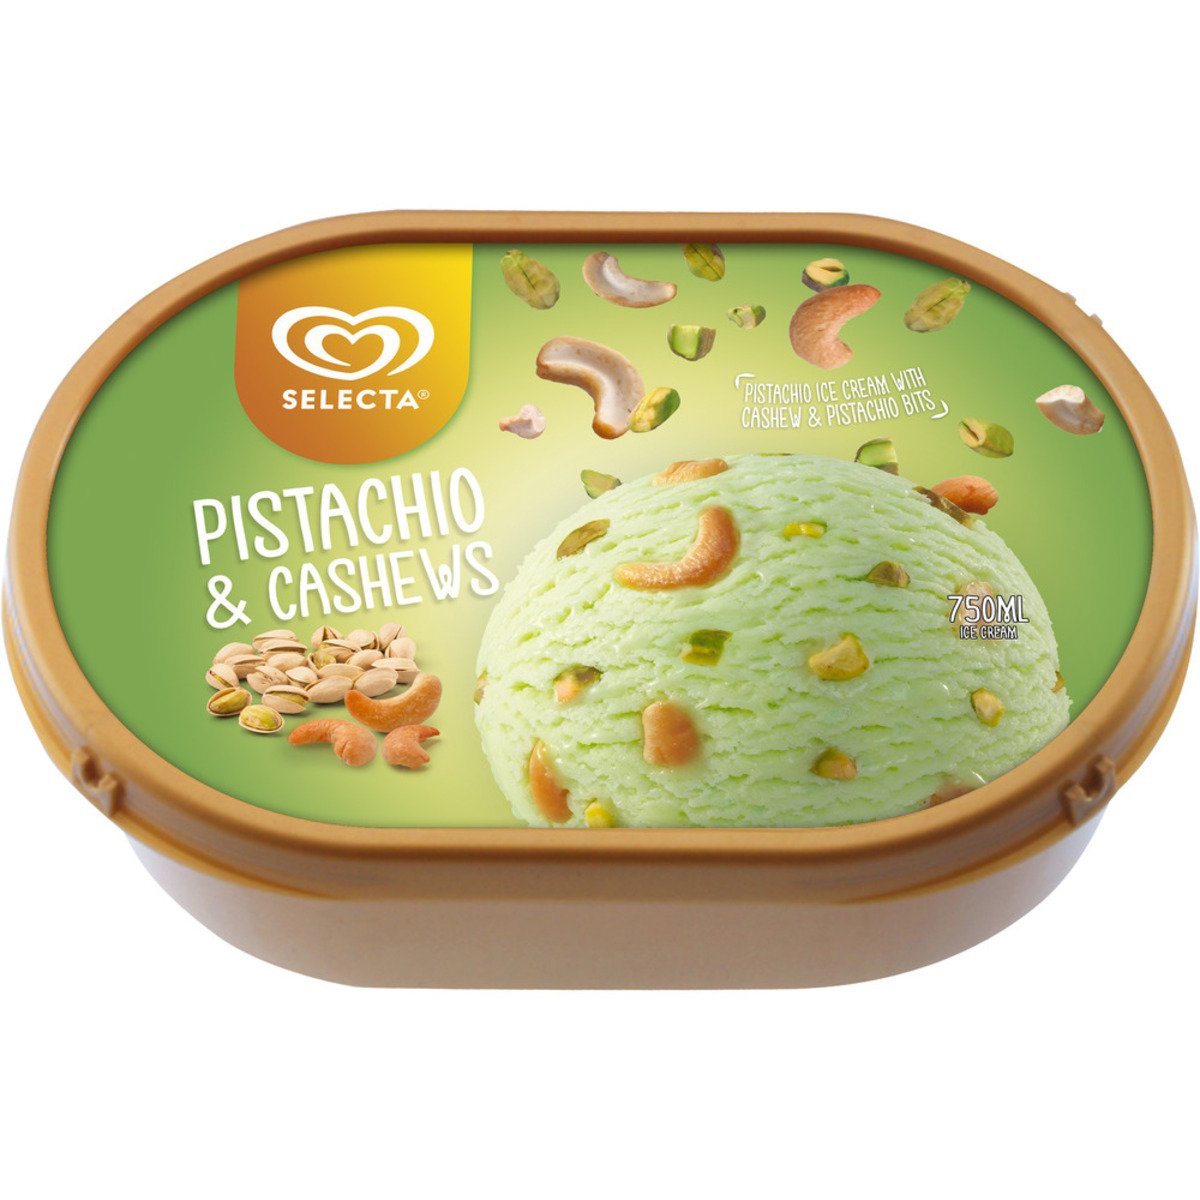 Buy Selecta Ice Cream Pistachio & Cashews 750 ml Online at Best Price | Ice Cream Impulse | Lulu UAE in UAE